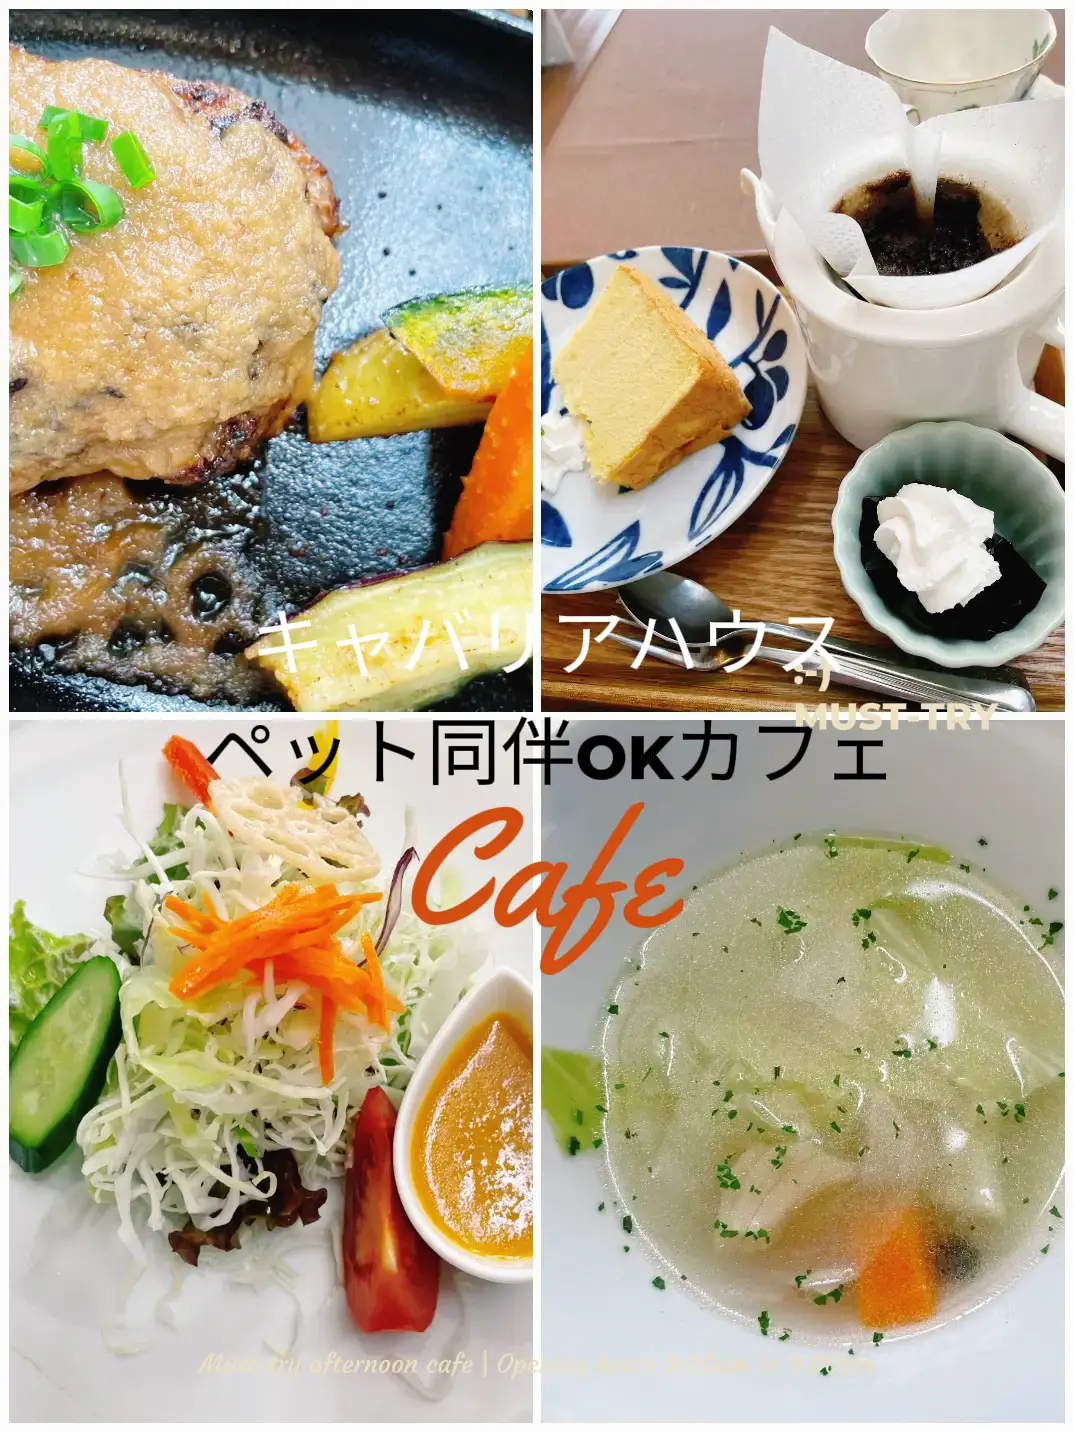 佐賀ドッグカフェ - Lemon8検索